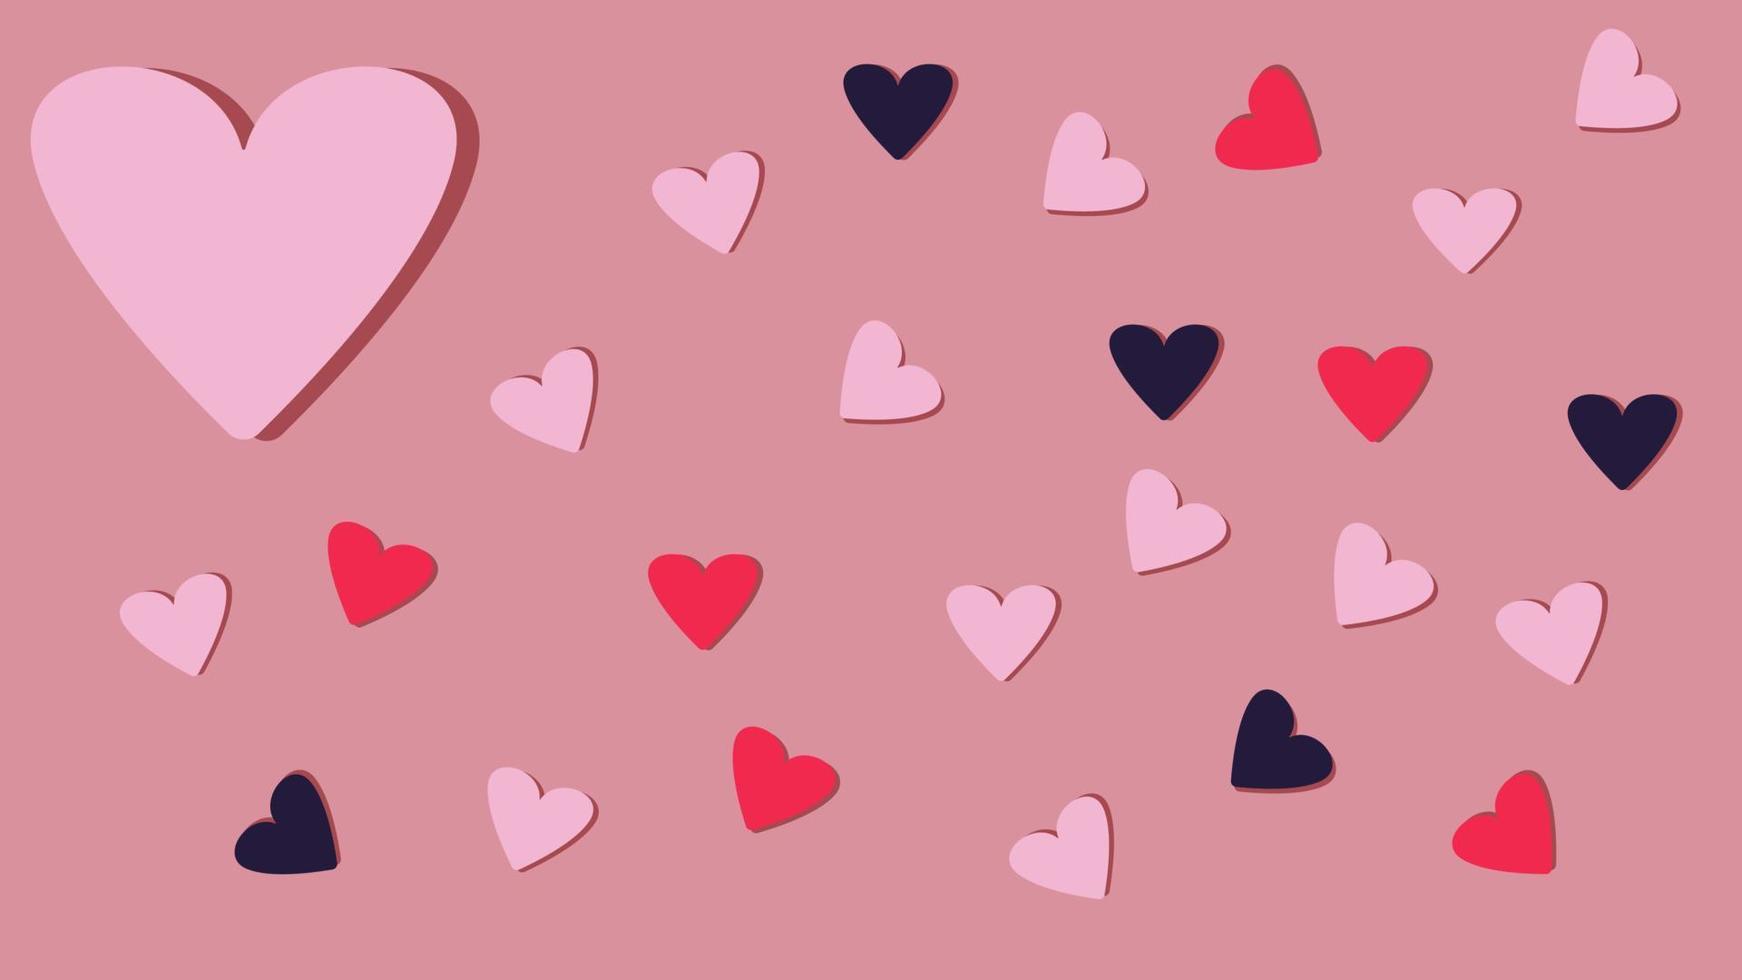 hermosos corazones de confeti cayendo sobre fondo rosa. diseño de plantilla para tarjeta de felicitación, día de san valentín, feliz día de la madre y cumpleaños. ilustración vectorial eps 10. vector